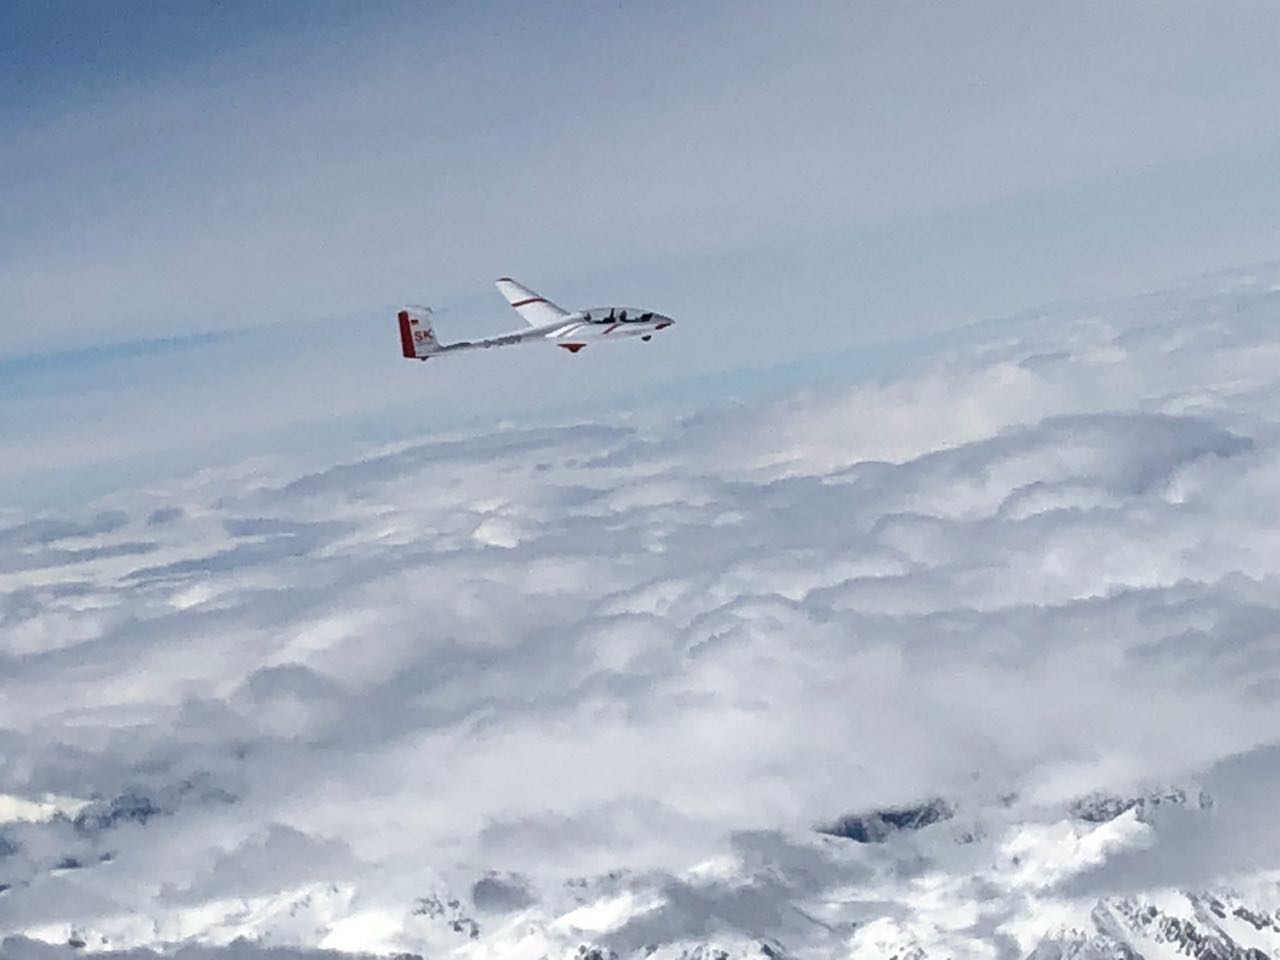 Eine ASK 21 mit roten Warnmarkierungen oberhalb der fast geschlossenen Wolkendecke. Im Vorderungd sieht man schneebedeckte Berggipfel durch die Wolkenlücken.